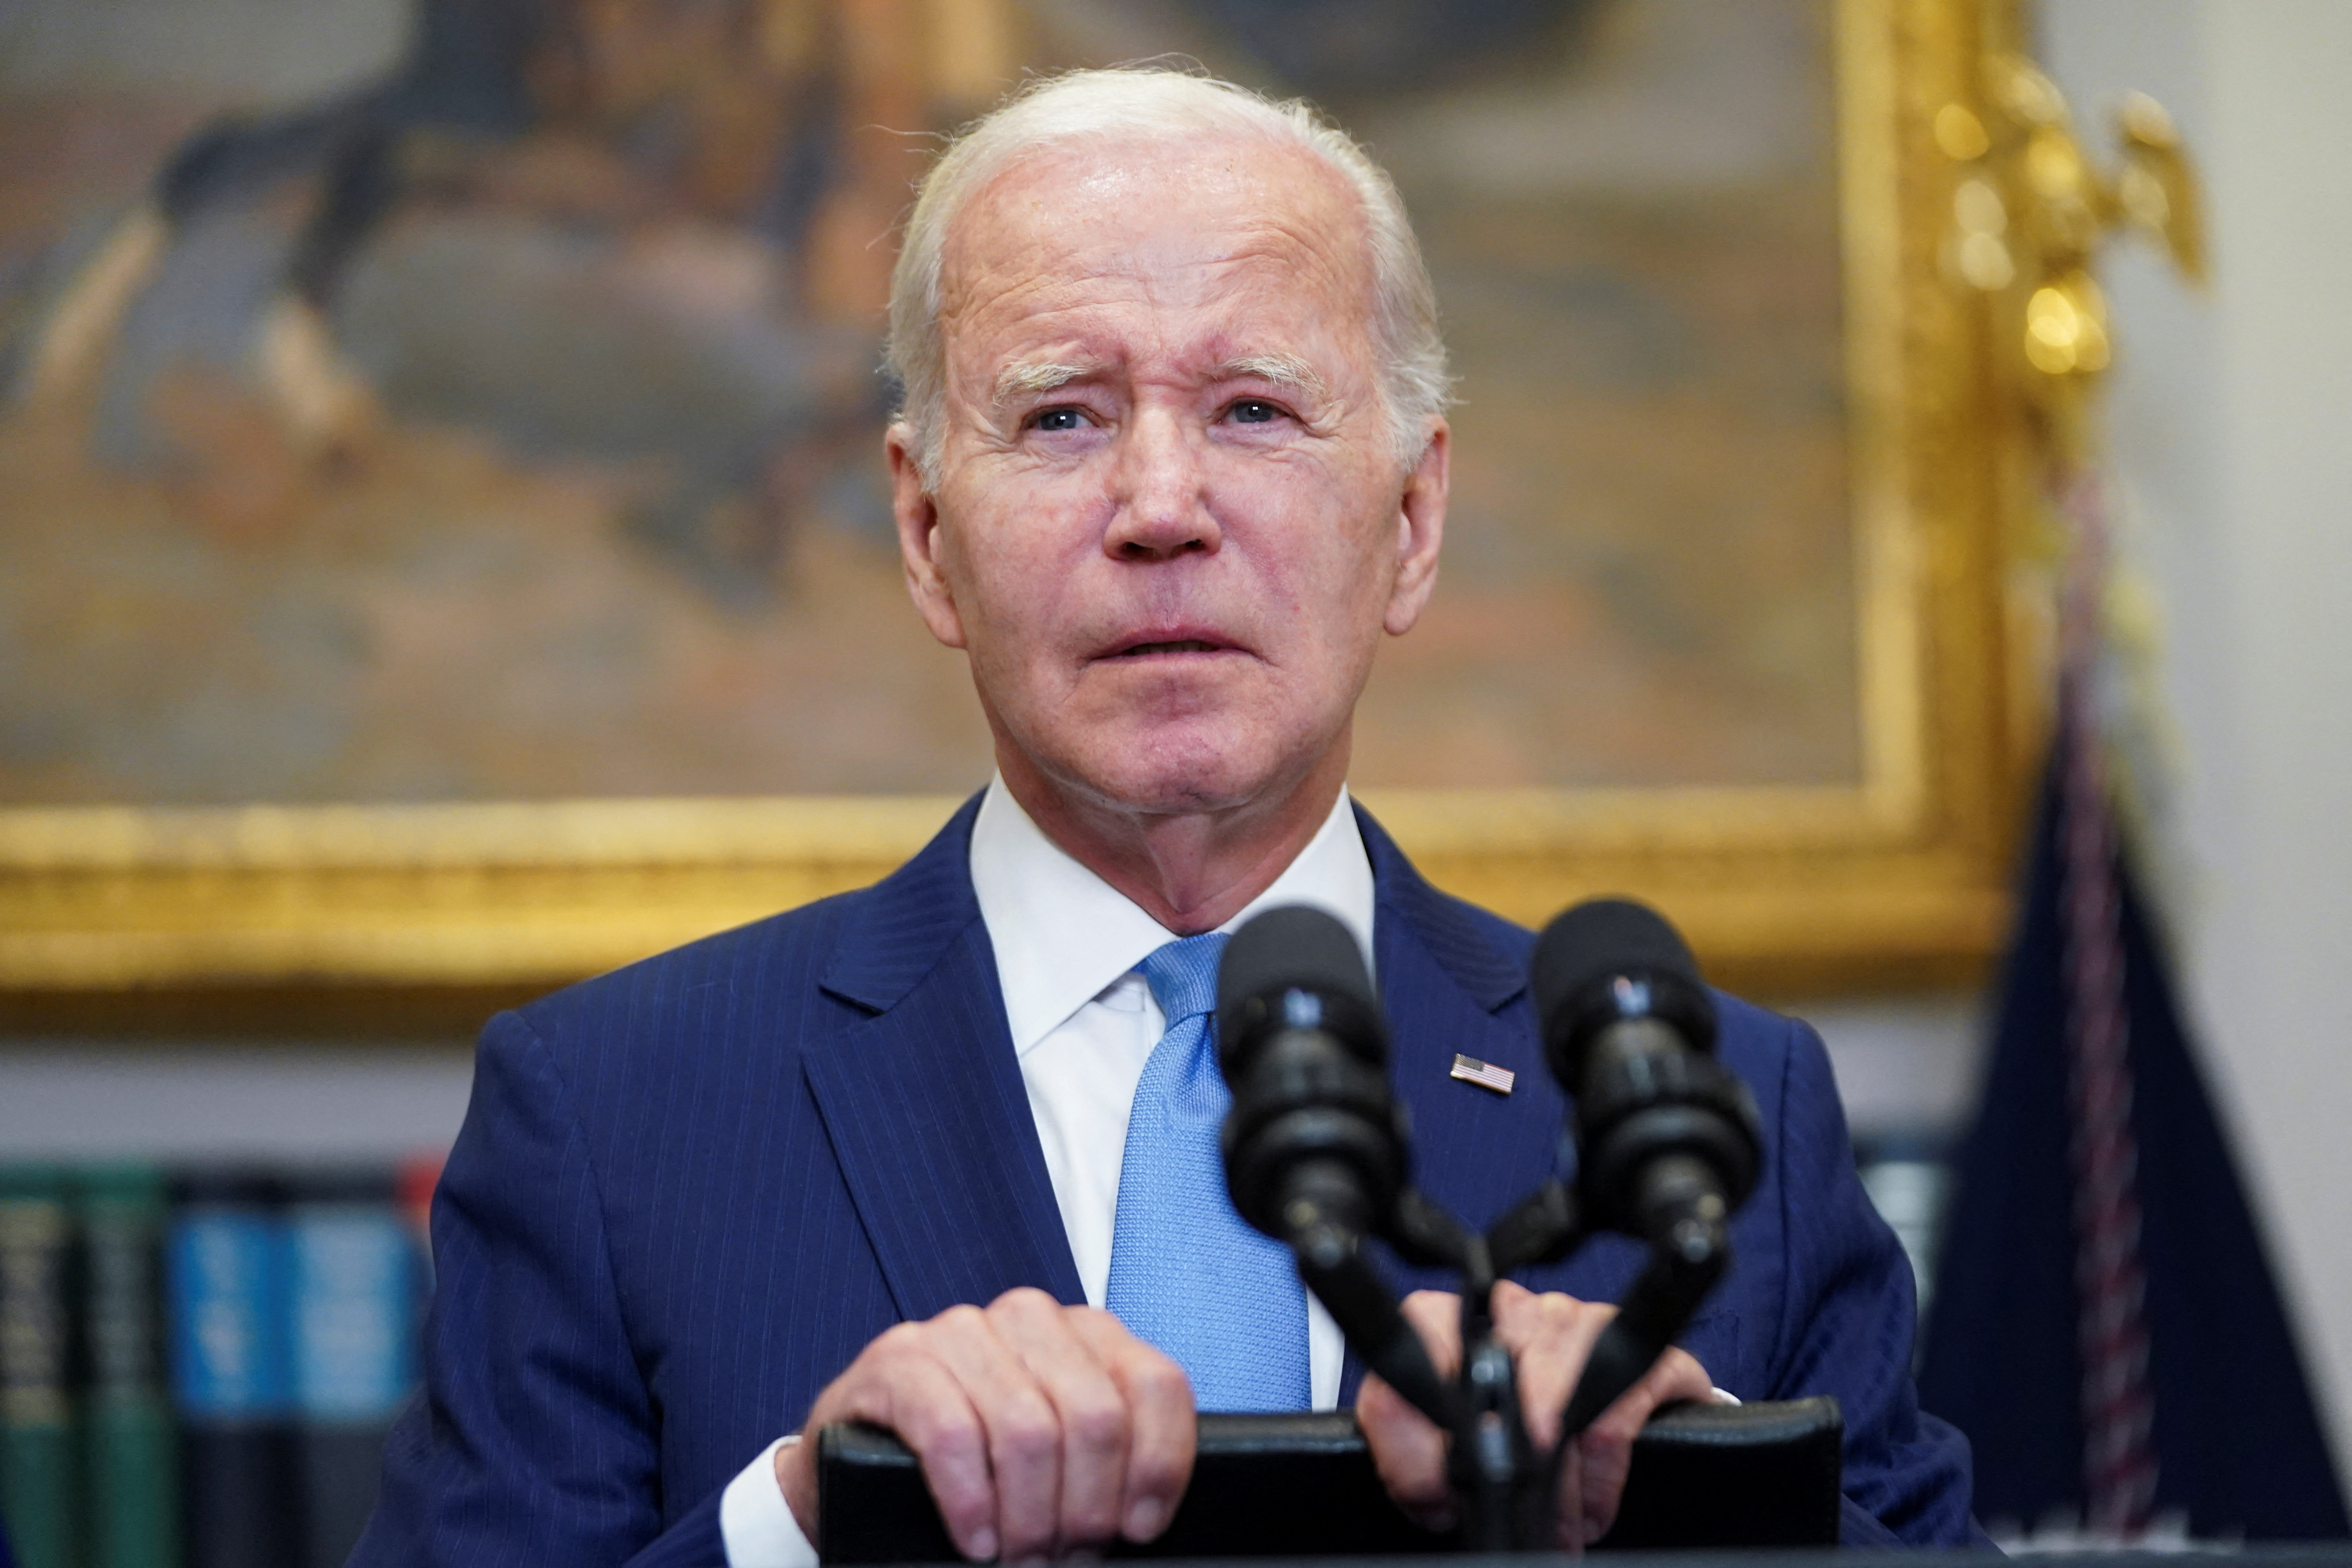 U.S. President Biden delivers remarks on debt ceiling talks and 